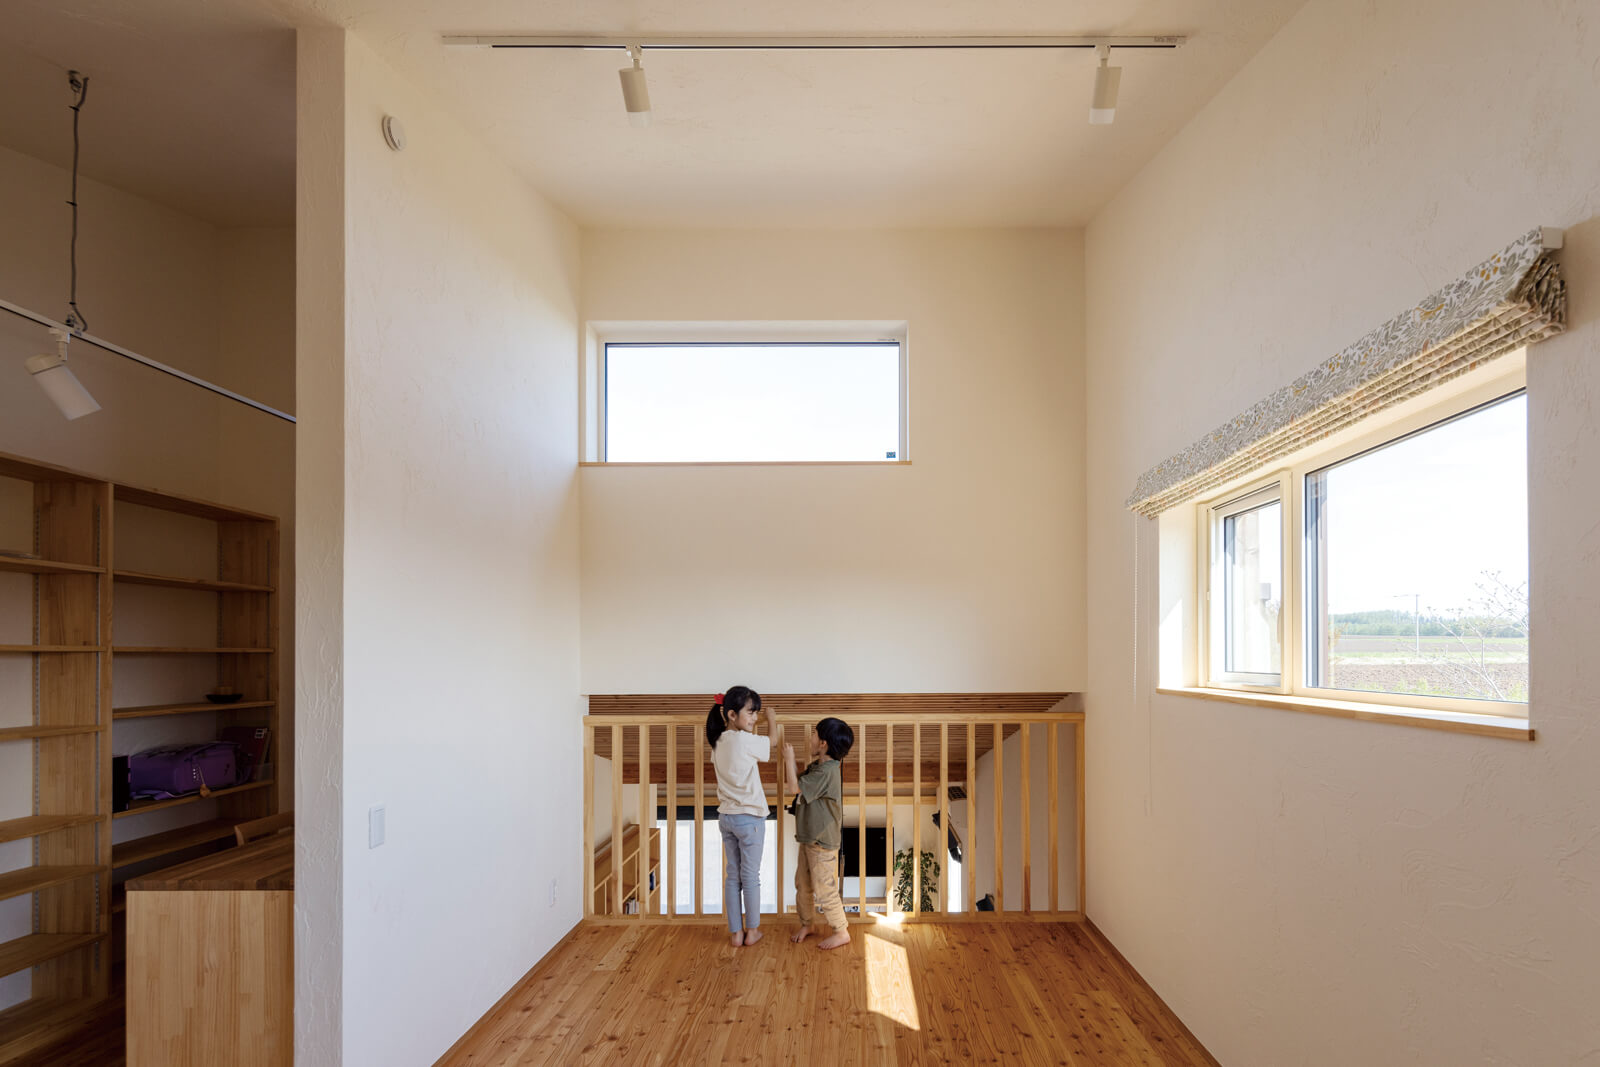 2階のフリースペースは将来分割して子ども部屋にできる仕様。ハーフ吹き抜けで、床面積と階下の適温を確保できるつくりに